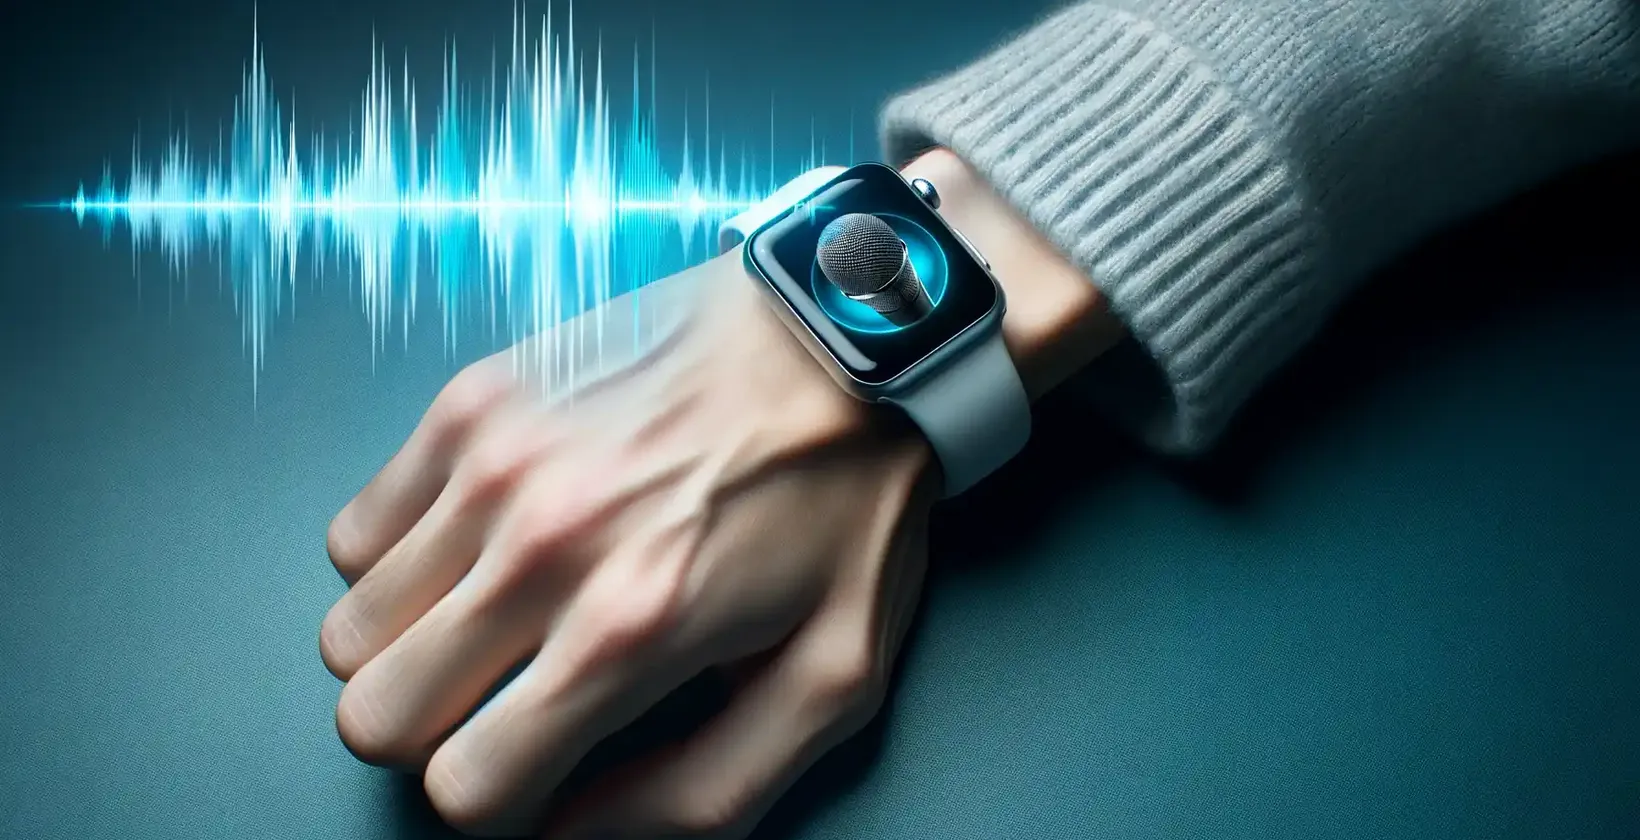 Grande plano do pulso de uma pessoa que usa um Apple Watch com um ícone de microfone, indicando o modo de ditado